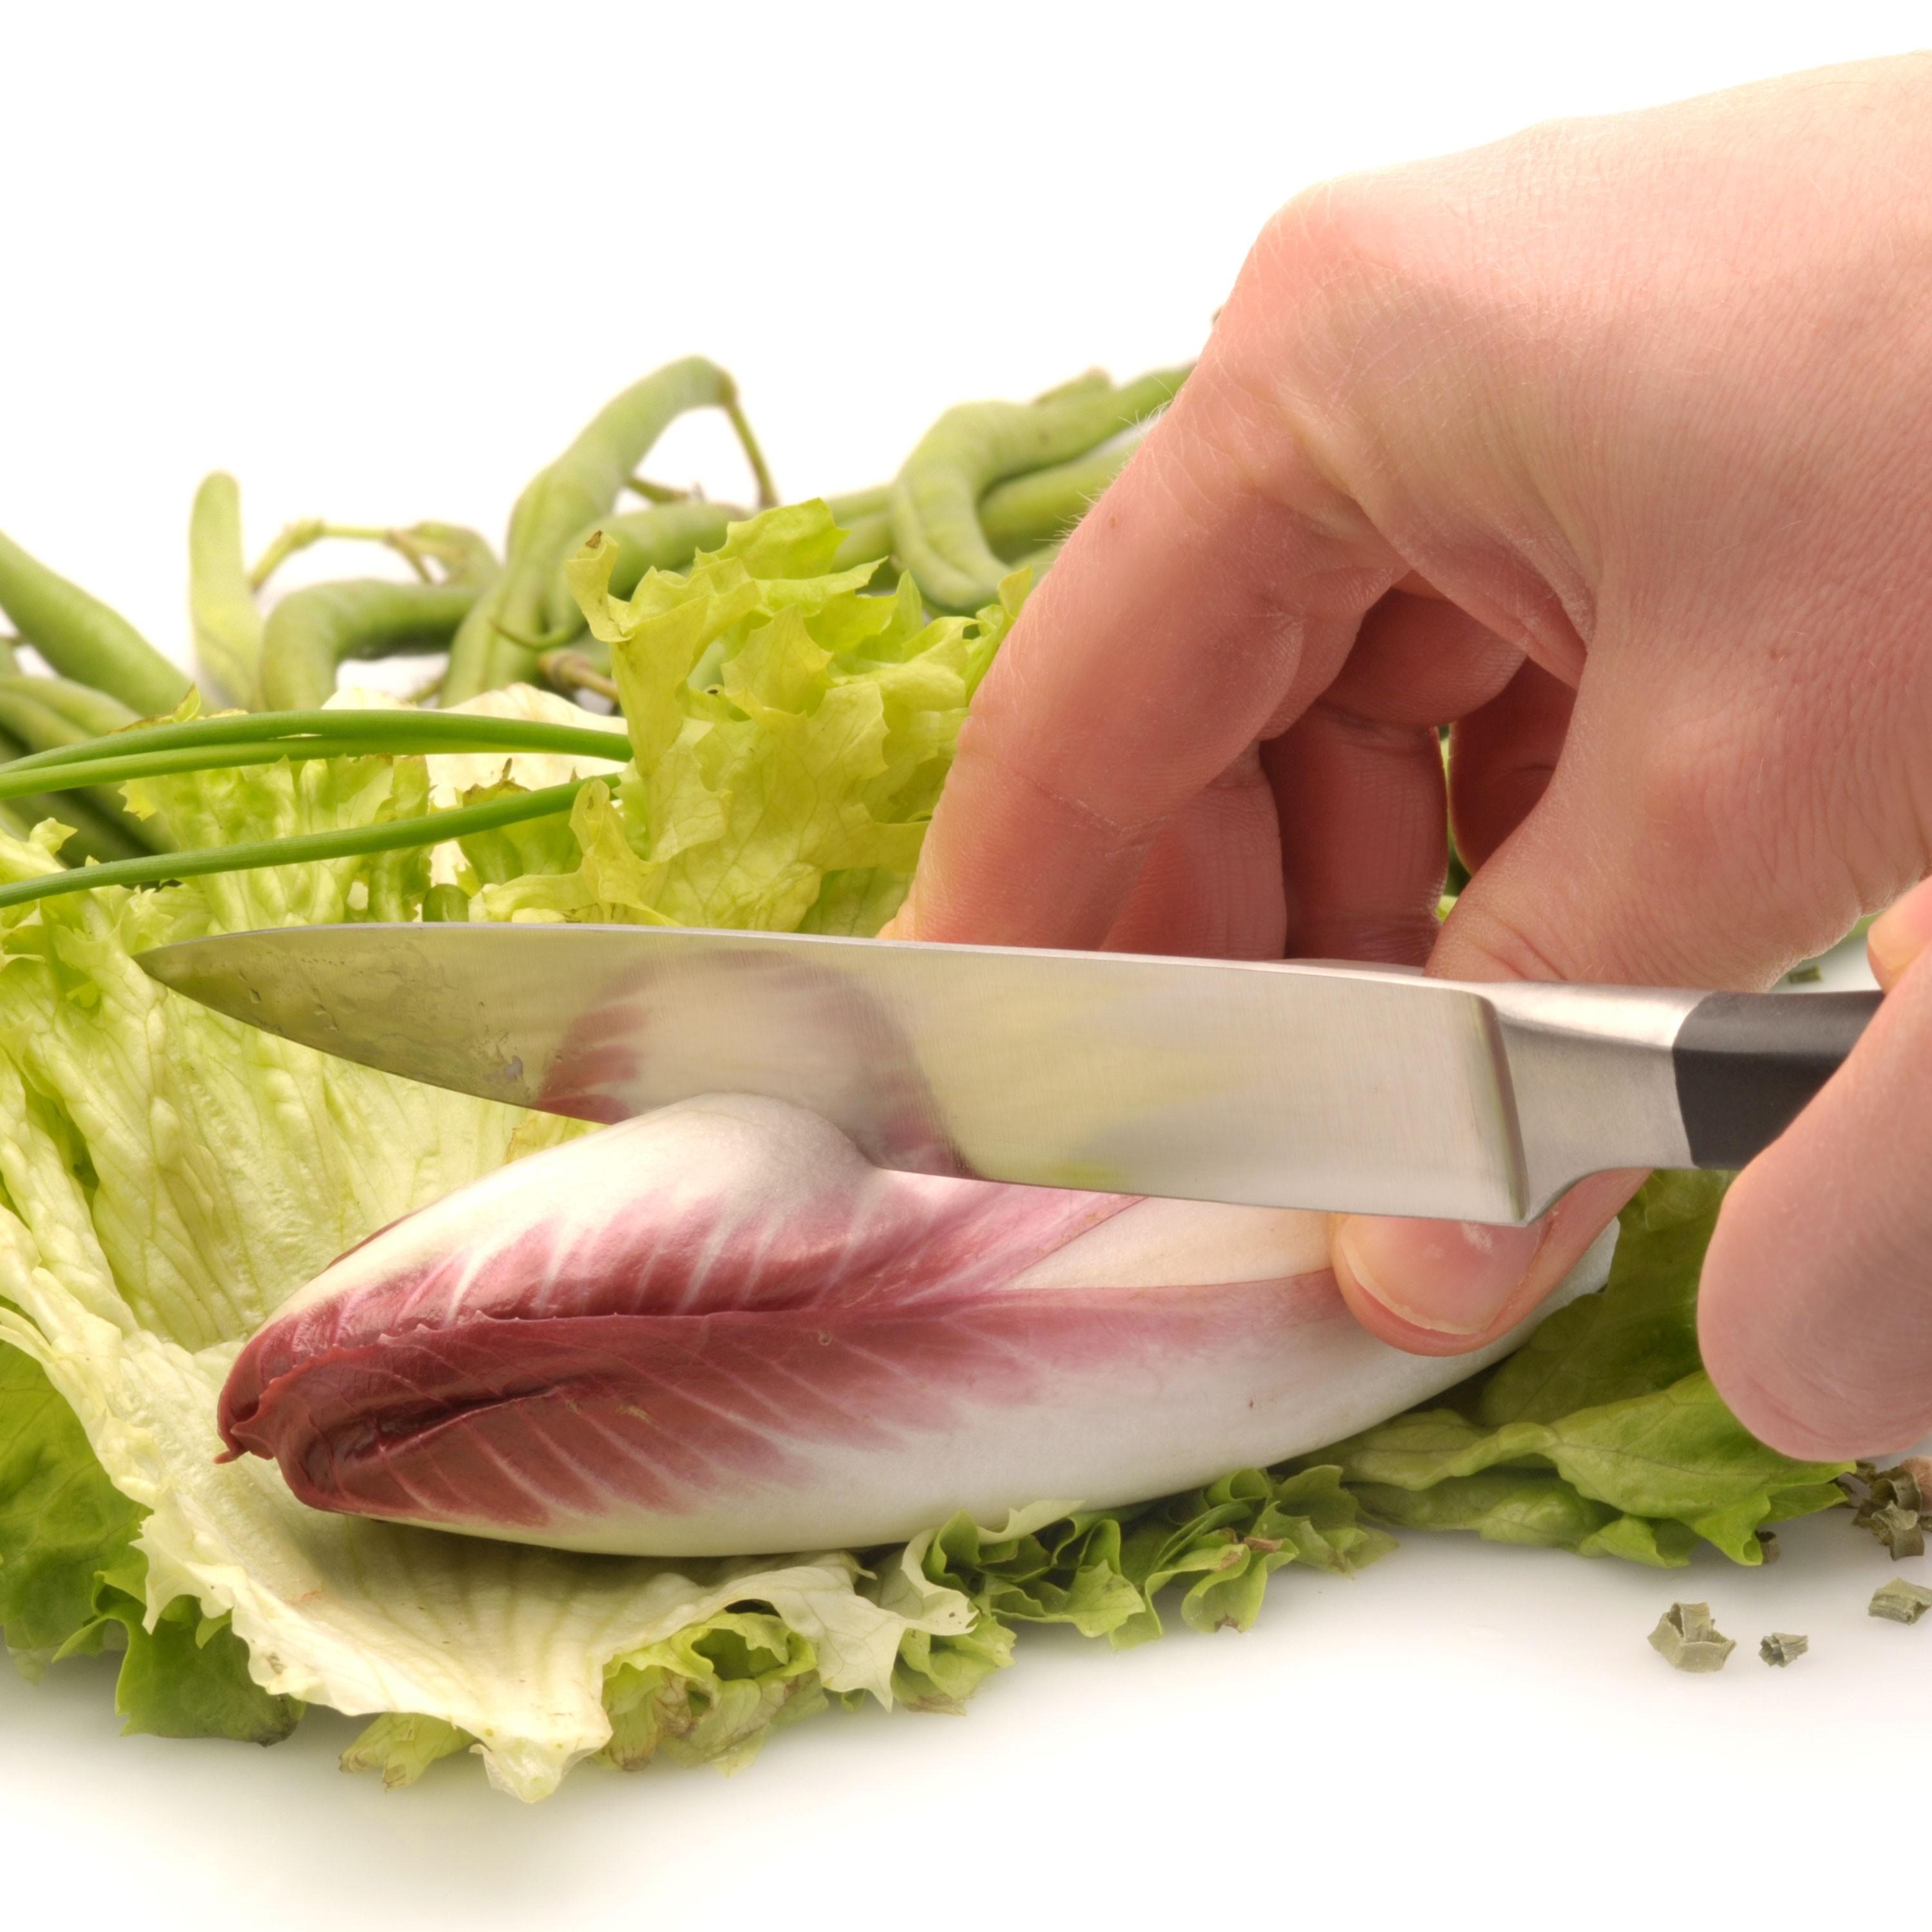 Nůž univerzální 12cm Gourmet